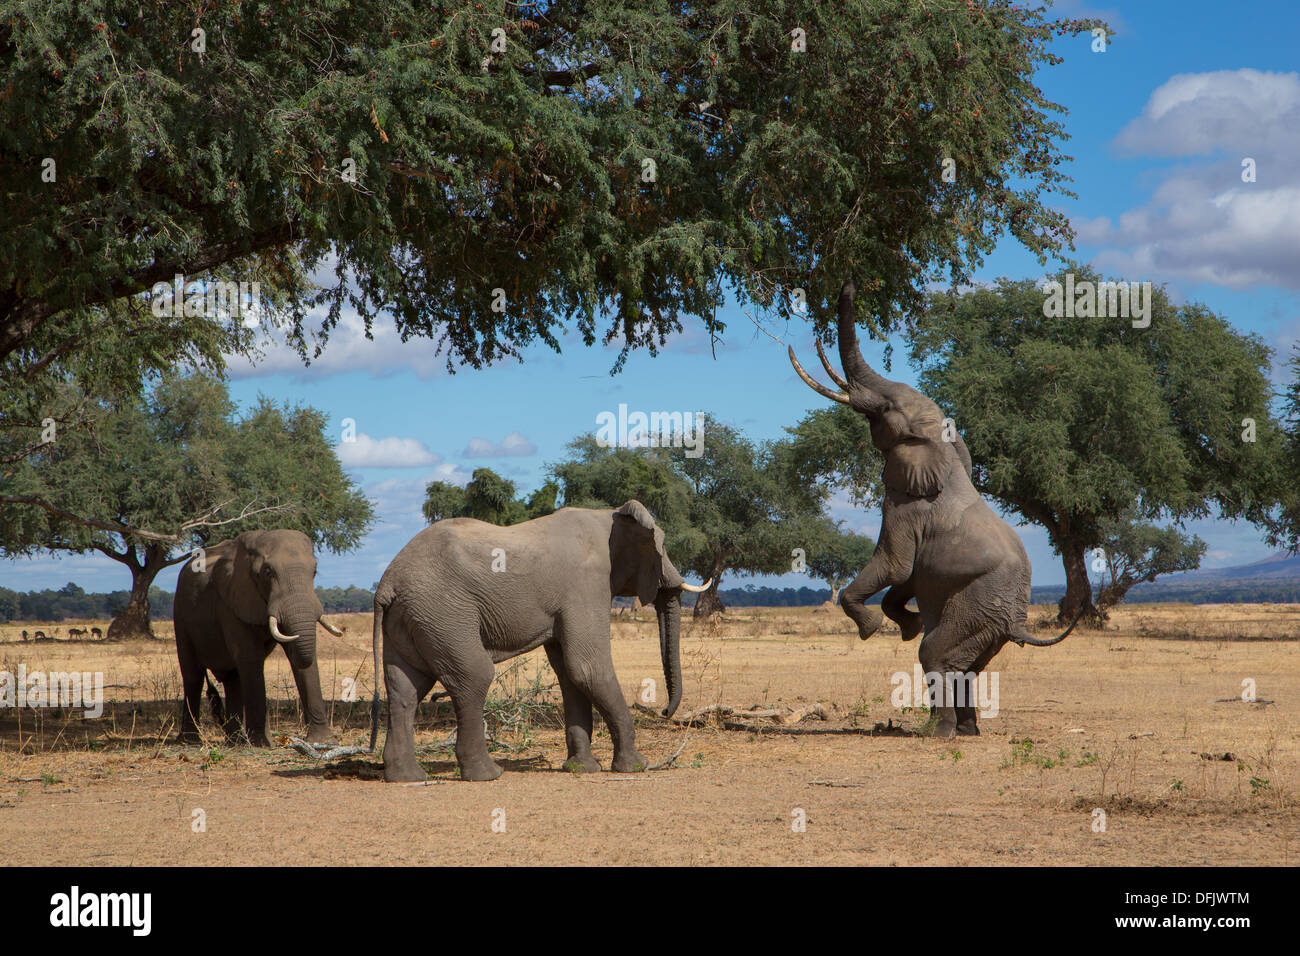 Tres elefantes africanos la navegación desde un árbol - un elefante se levanta sobre sus patas traseras para alcanzar Foto de stock